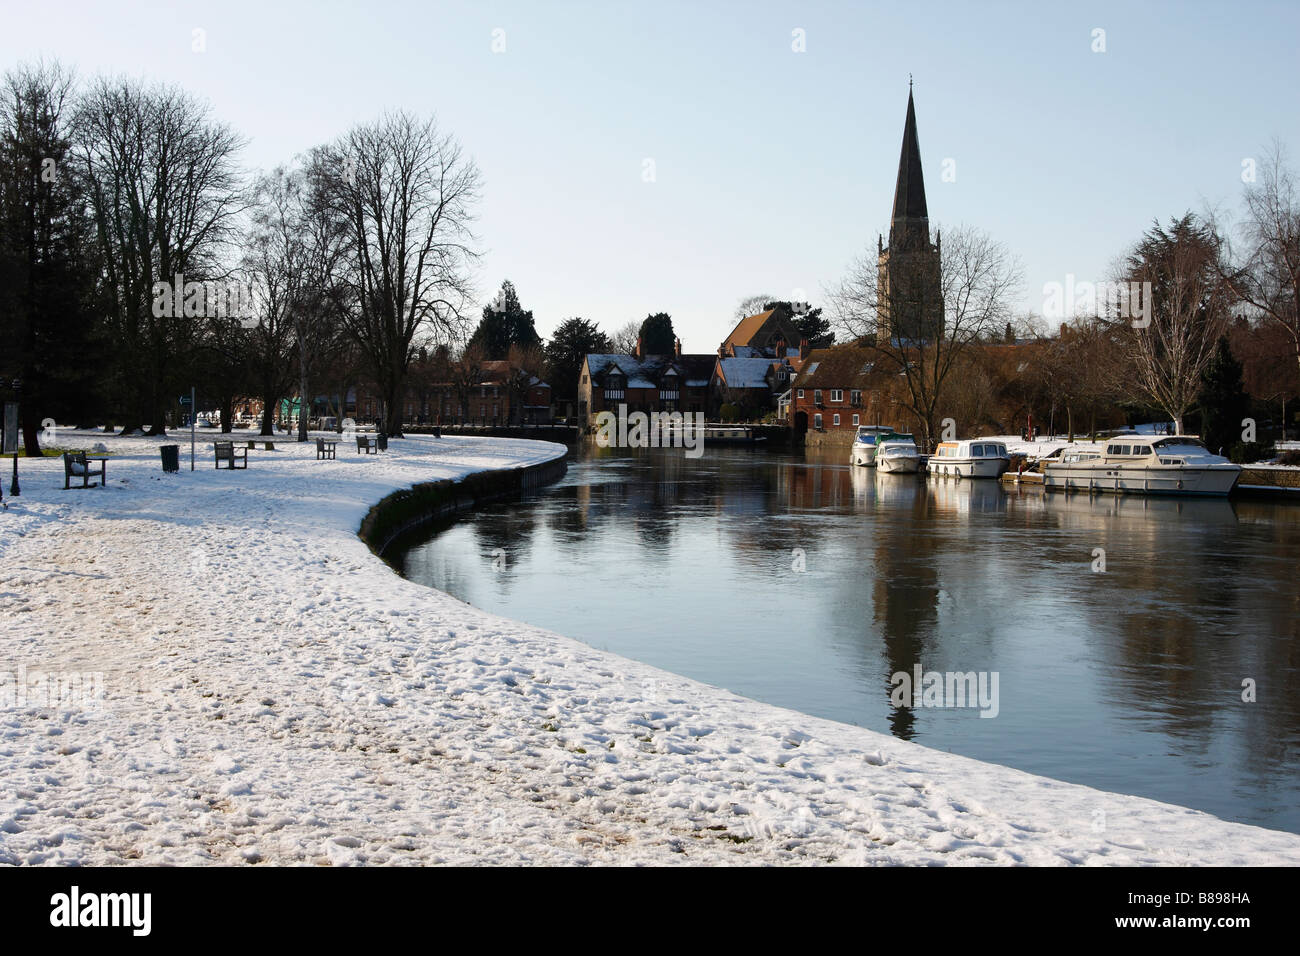 Themse bei Abingdon, Schnee bedeckten Ufer und 'St Helens' Kirche Spire, Oxfordshire, England, Vereinigtes Königreich, Winter-Szene Stockfoto